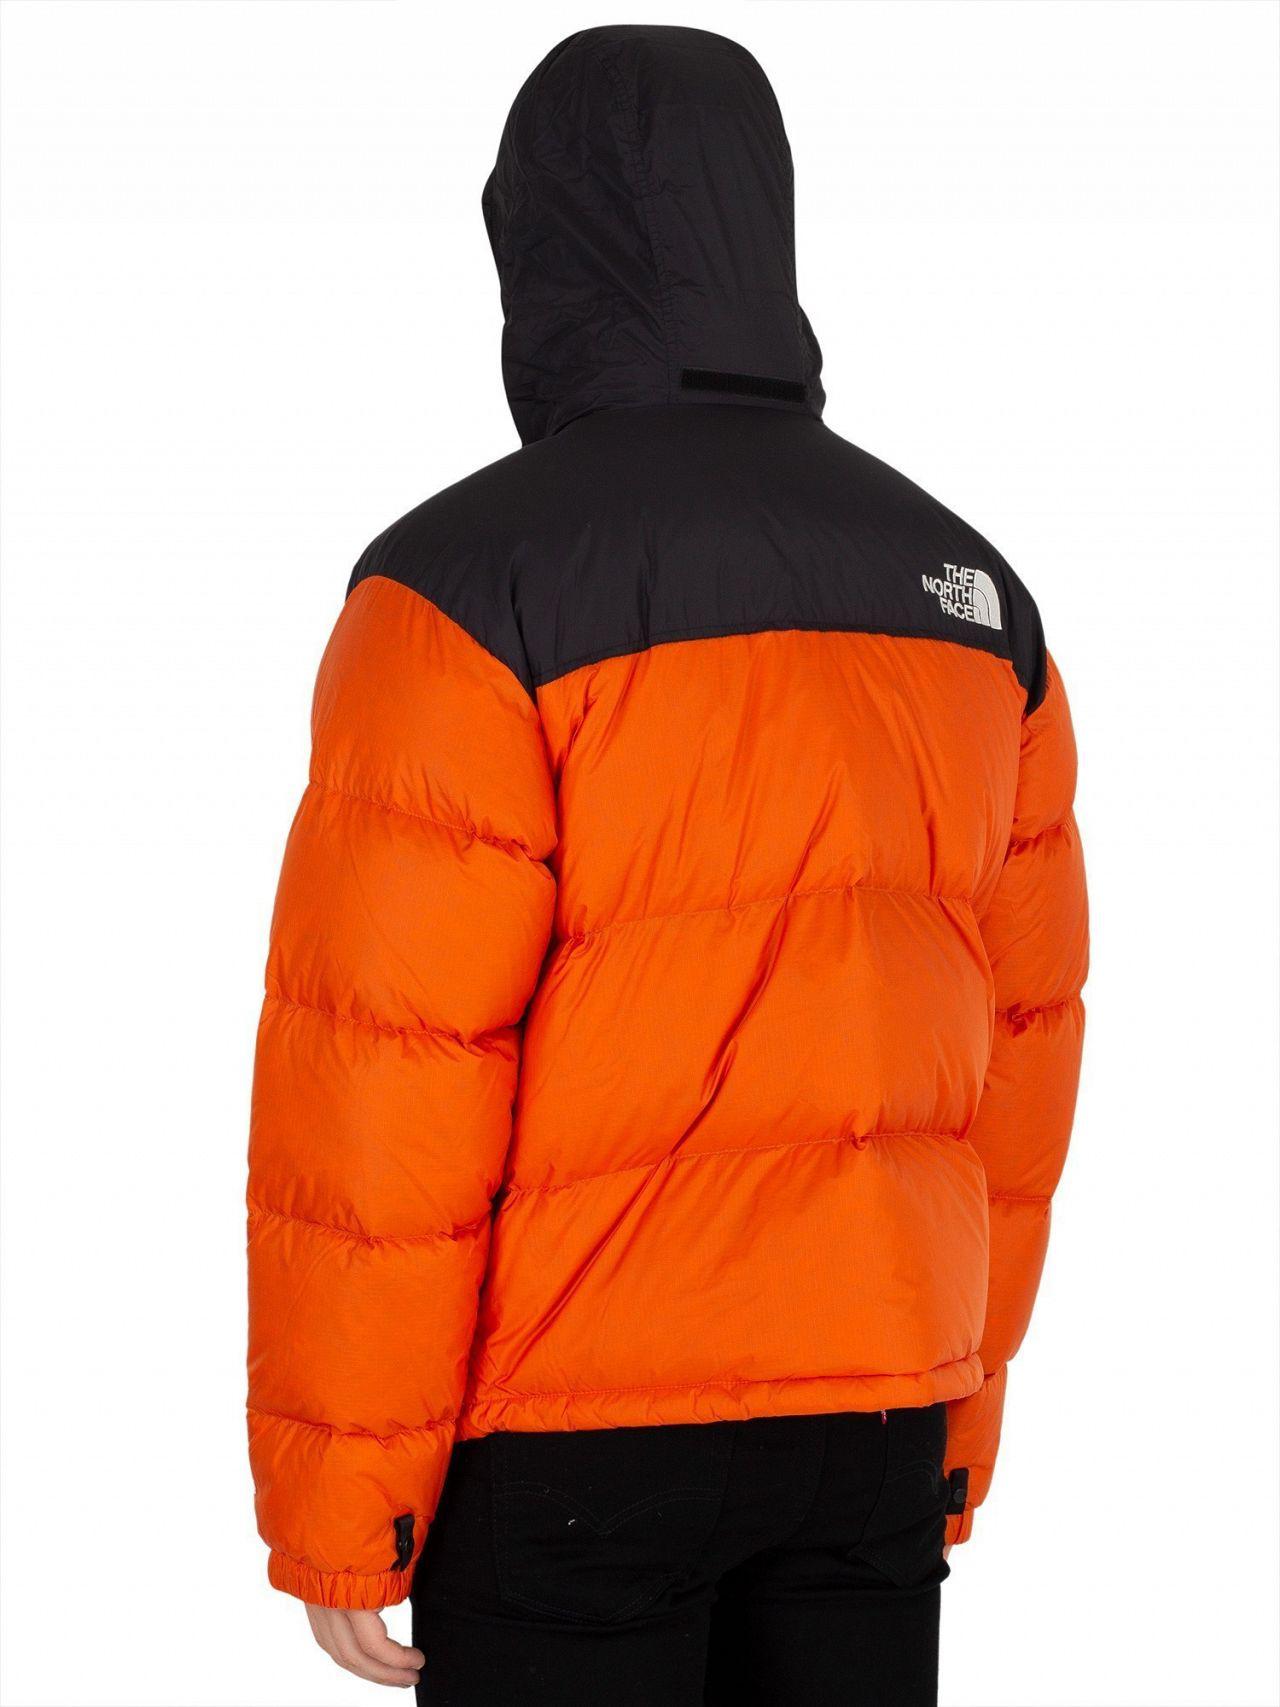 north face 1996 retro nuptse jacket persian orange